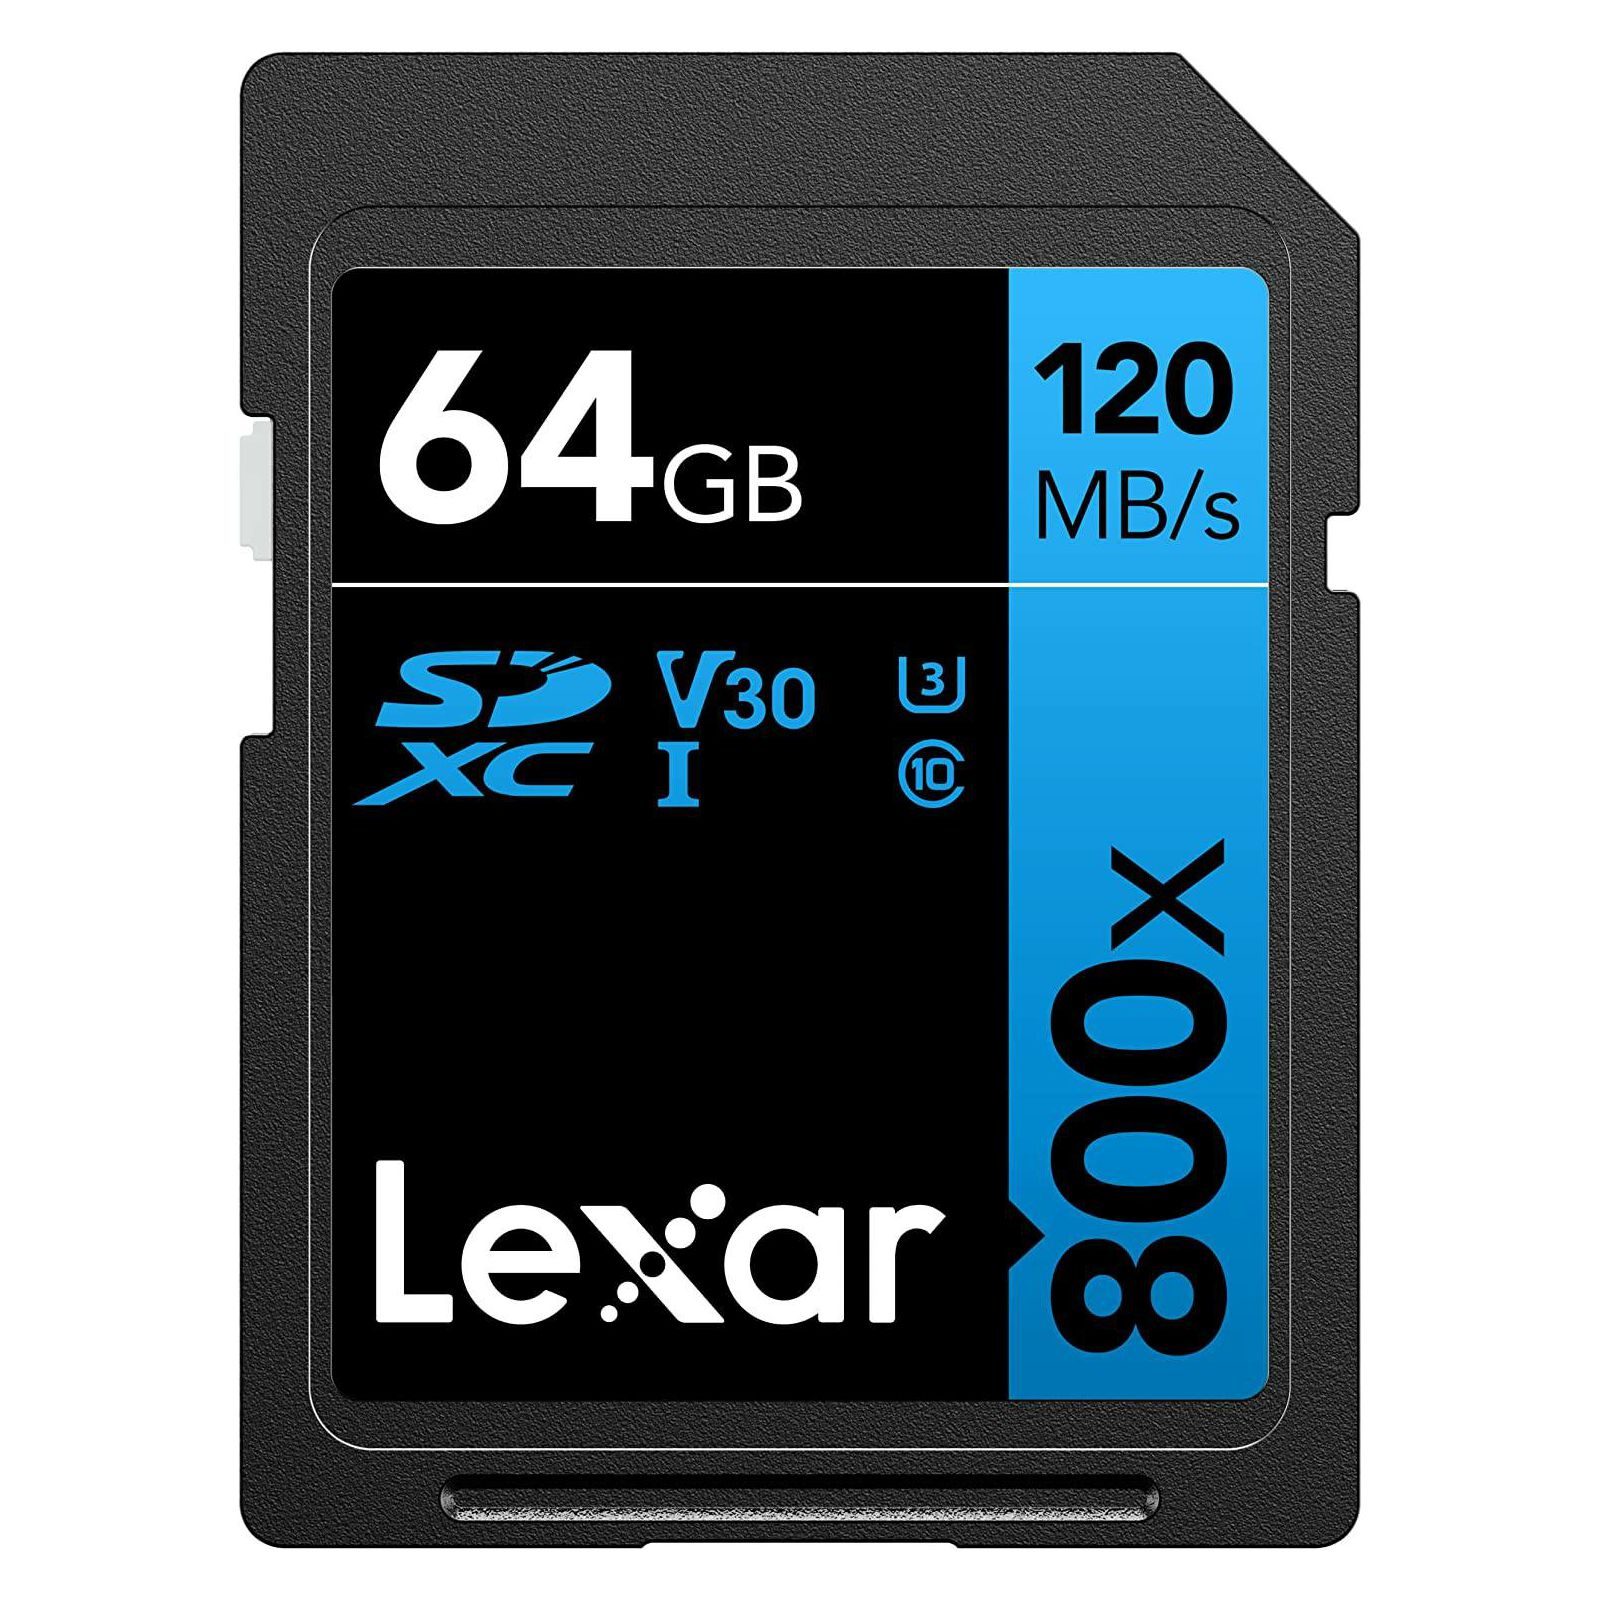 Lexar SDXC 64GB 800x 120MB/s UHS-I C10 V30 U3 4K UHD memorijska kartica (LSD0800064G)